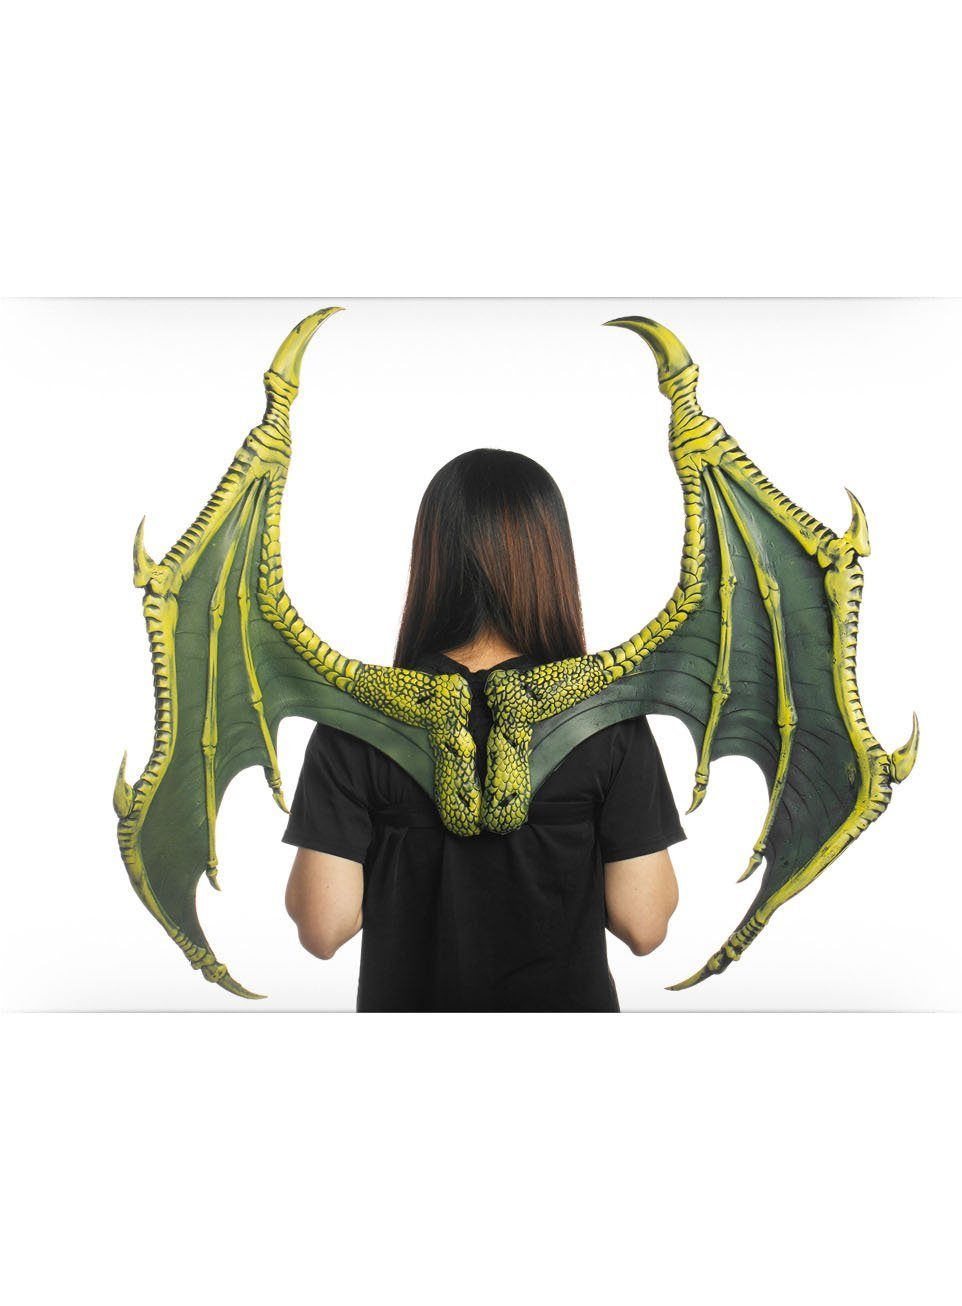 Metamorph Kostüm-Flügel Drachenflügel, Imposante grüne Flügel für zahlreiche Kostümideen